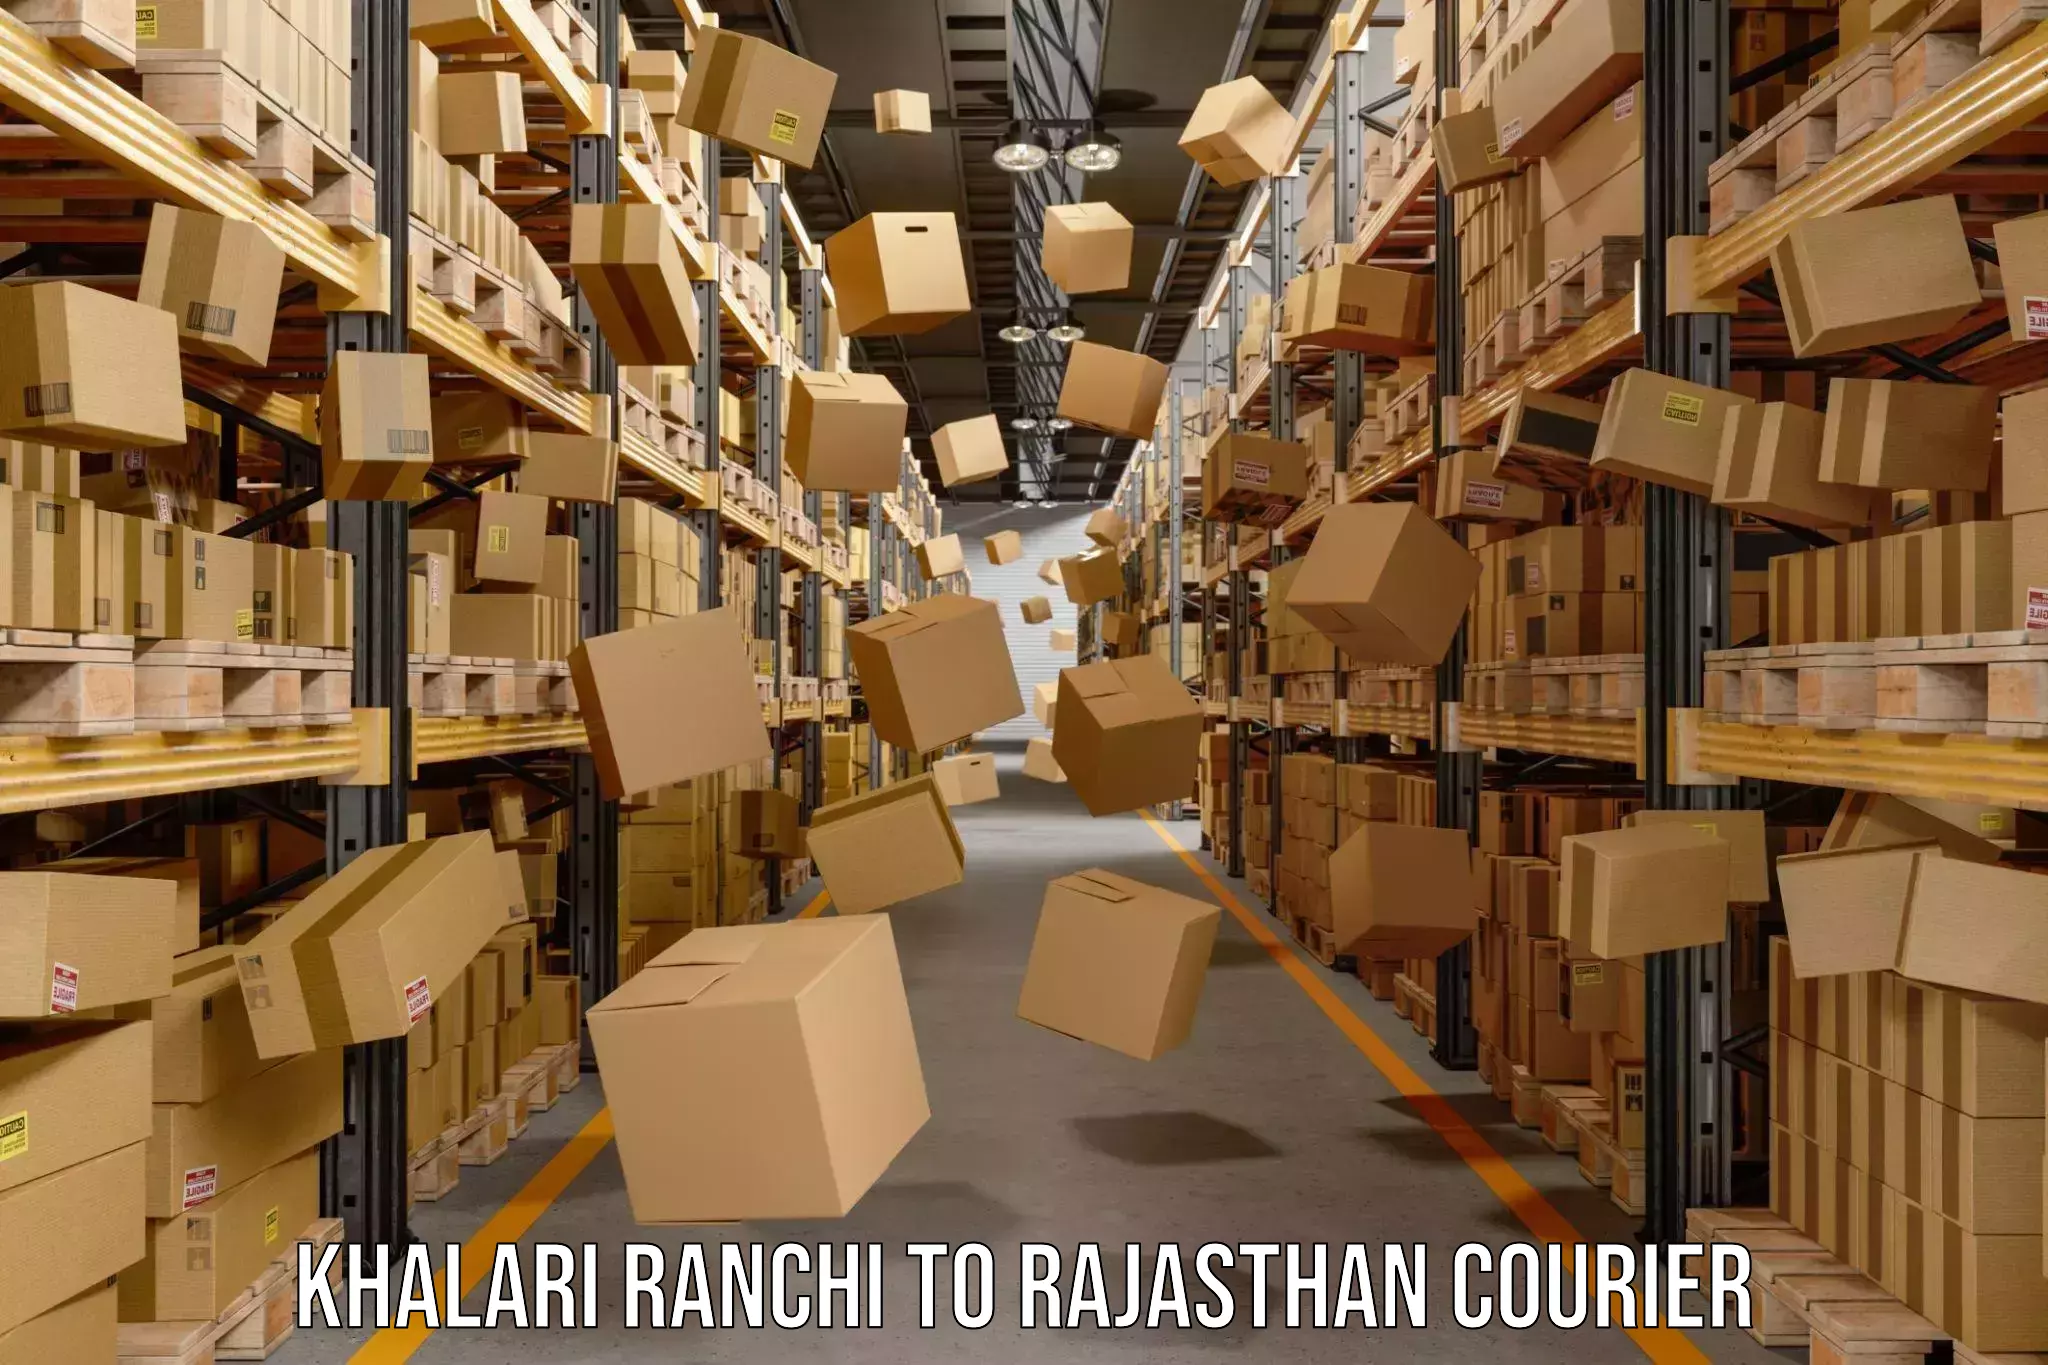 Courier service comparison Khalari Ranchi to Sultana